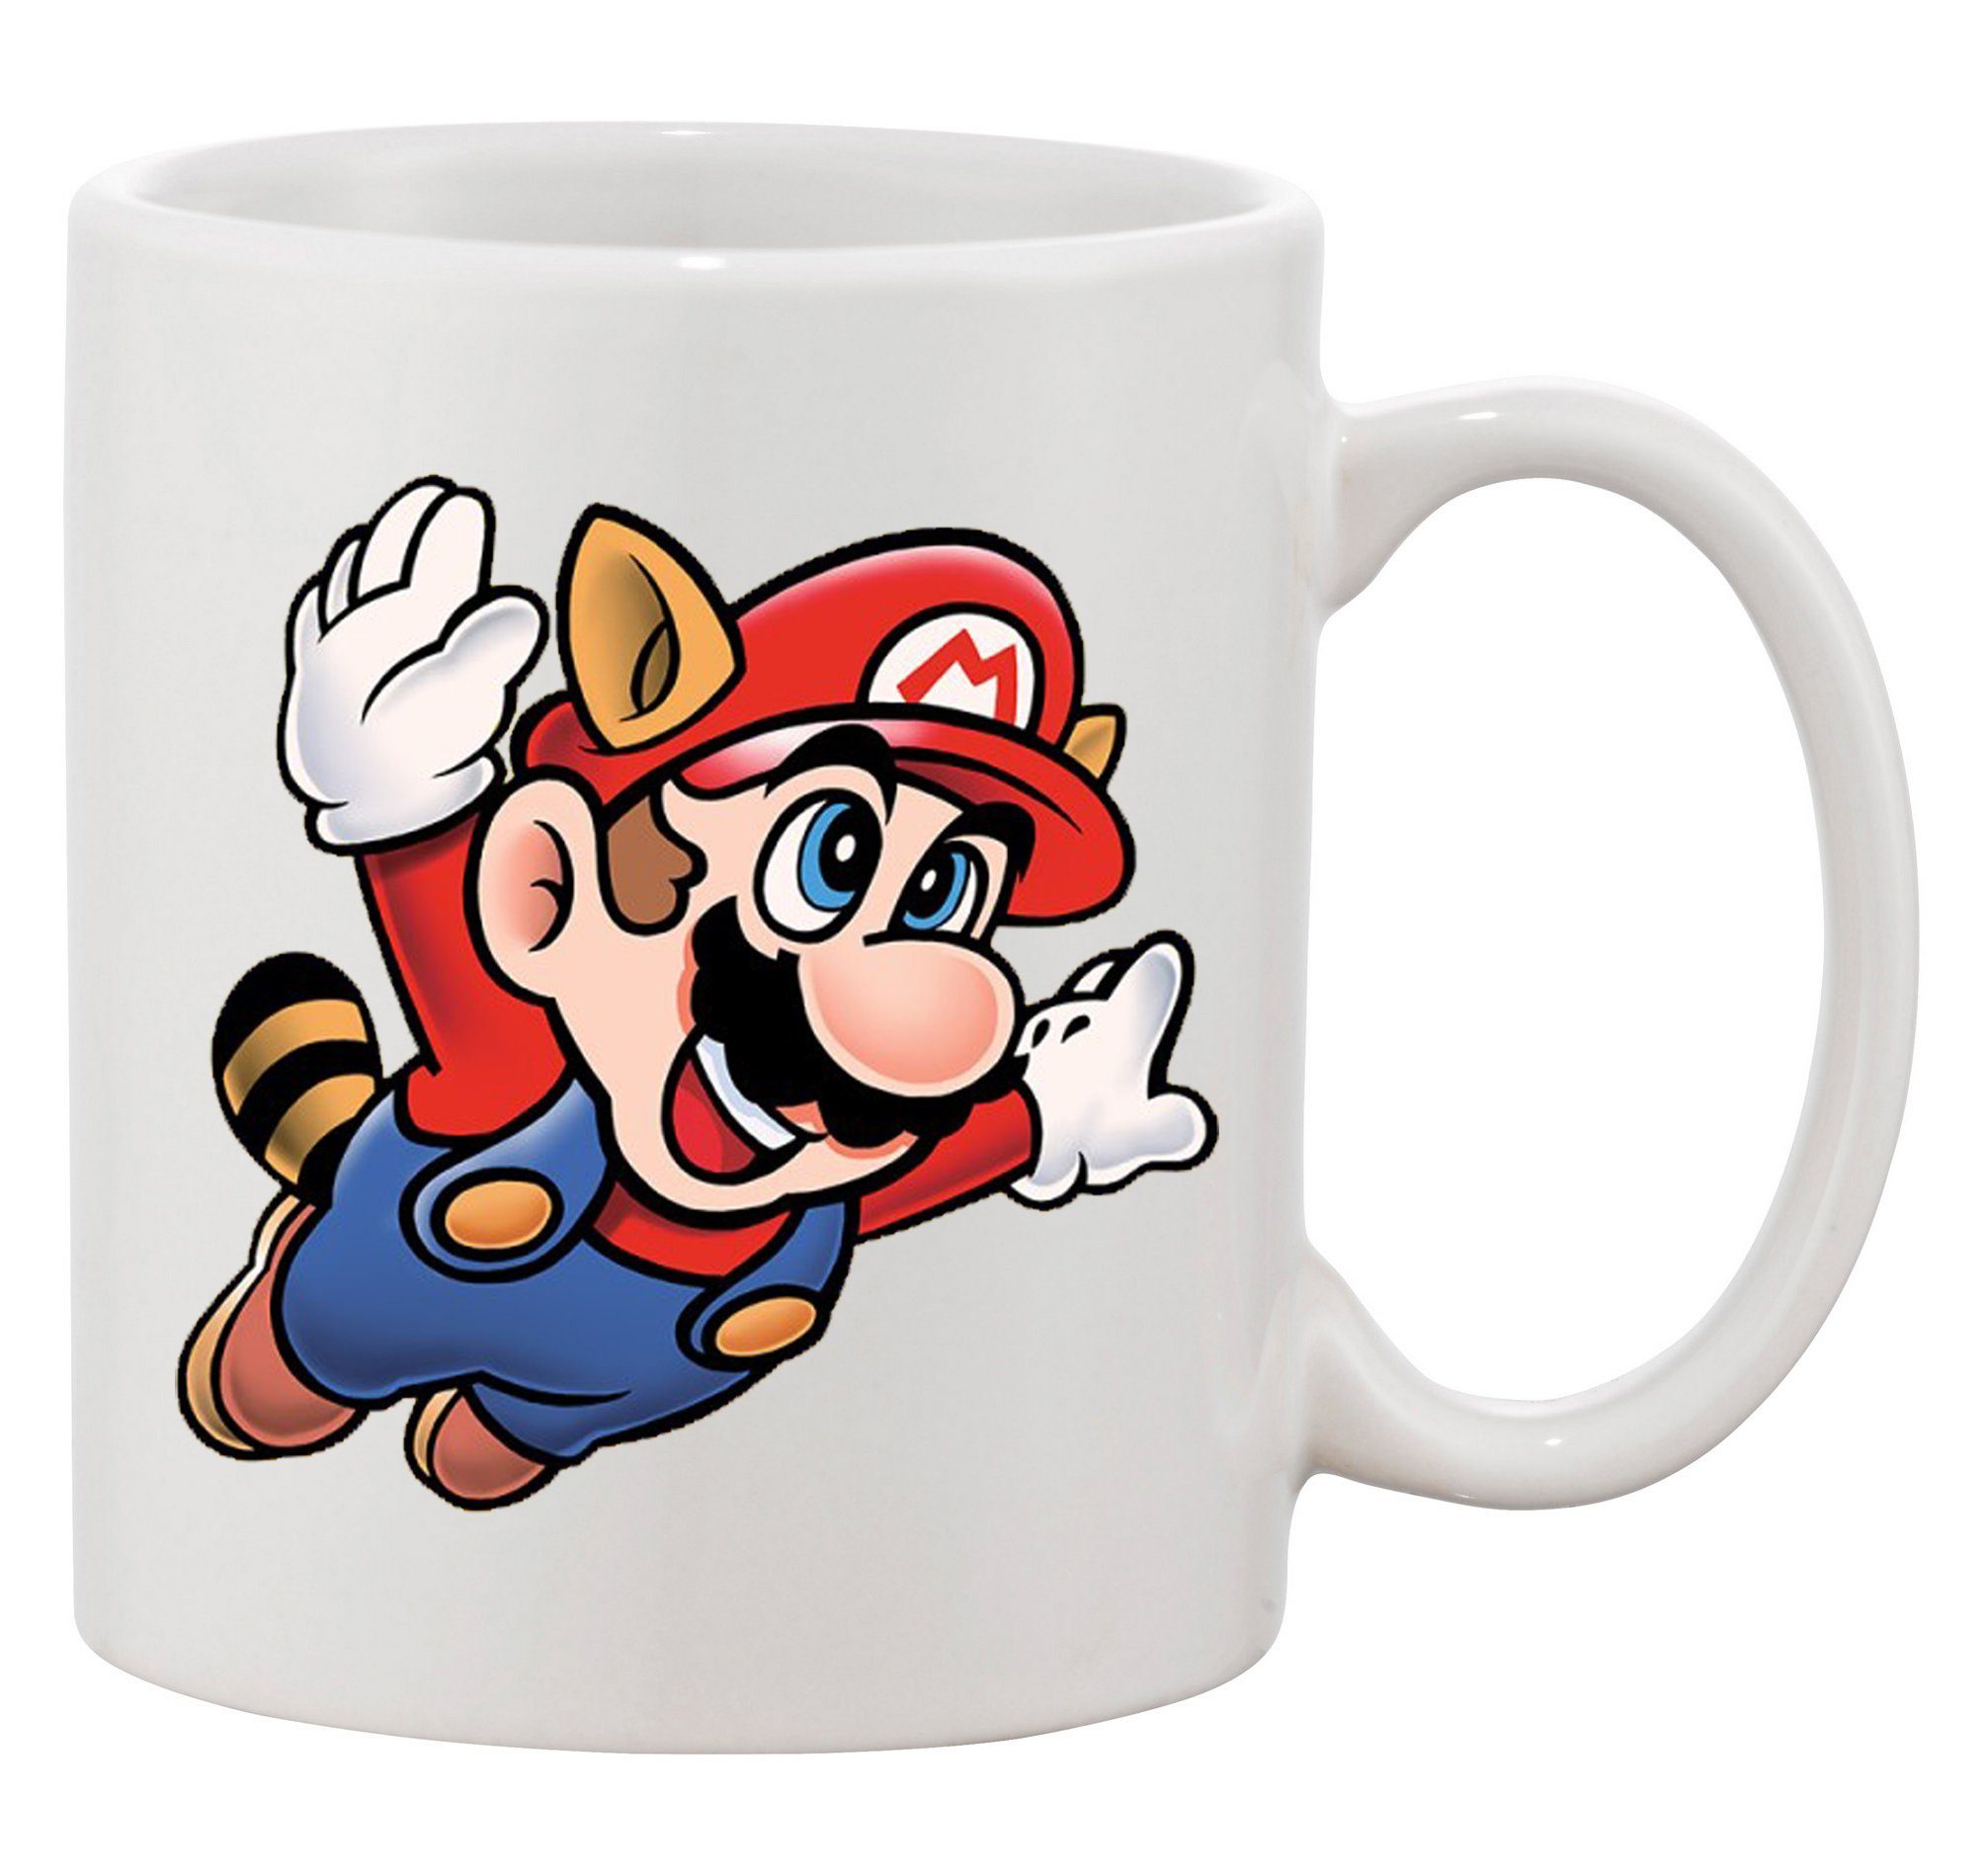 Blondie & Brownie Tasse Super Mario 3 Fligh Retro Gamer Gaming Nerd Konsole, Keramik